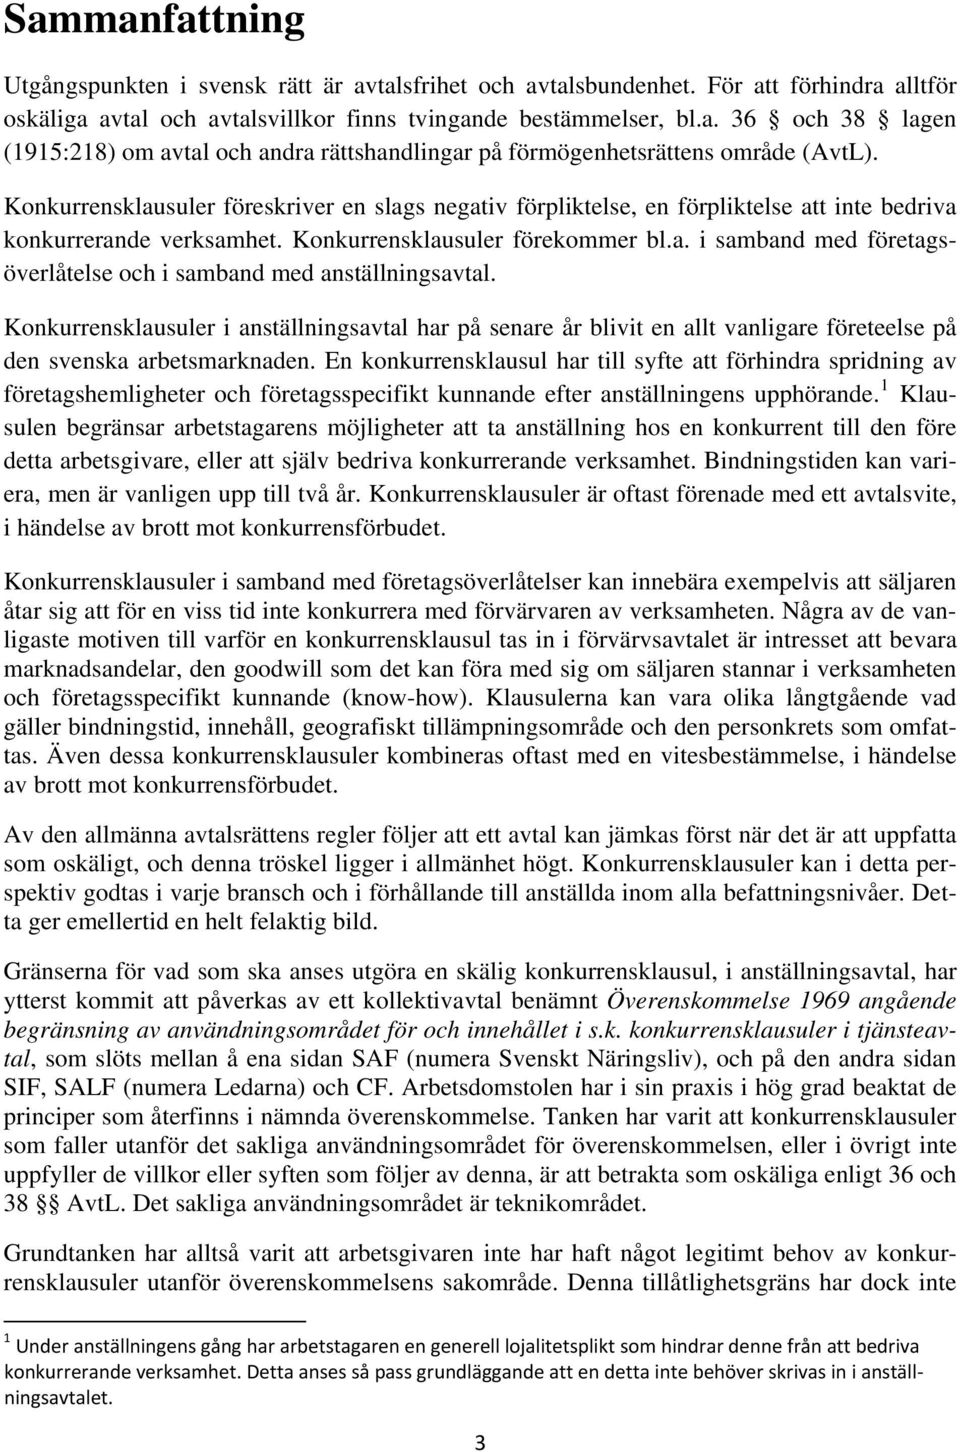 Konkurrensklausuler i anställningsavtal har på senare år blivit en allt vanligare företeelse på den svenska arbetsmarknaden.